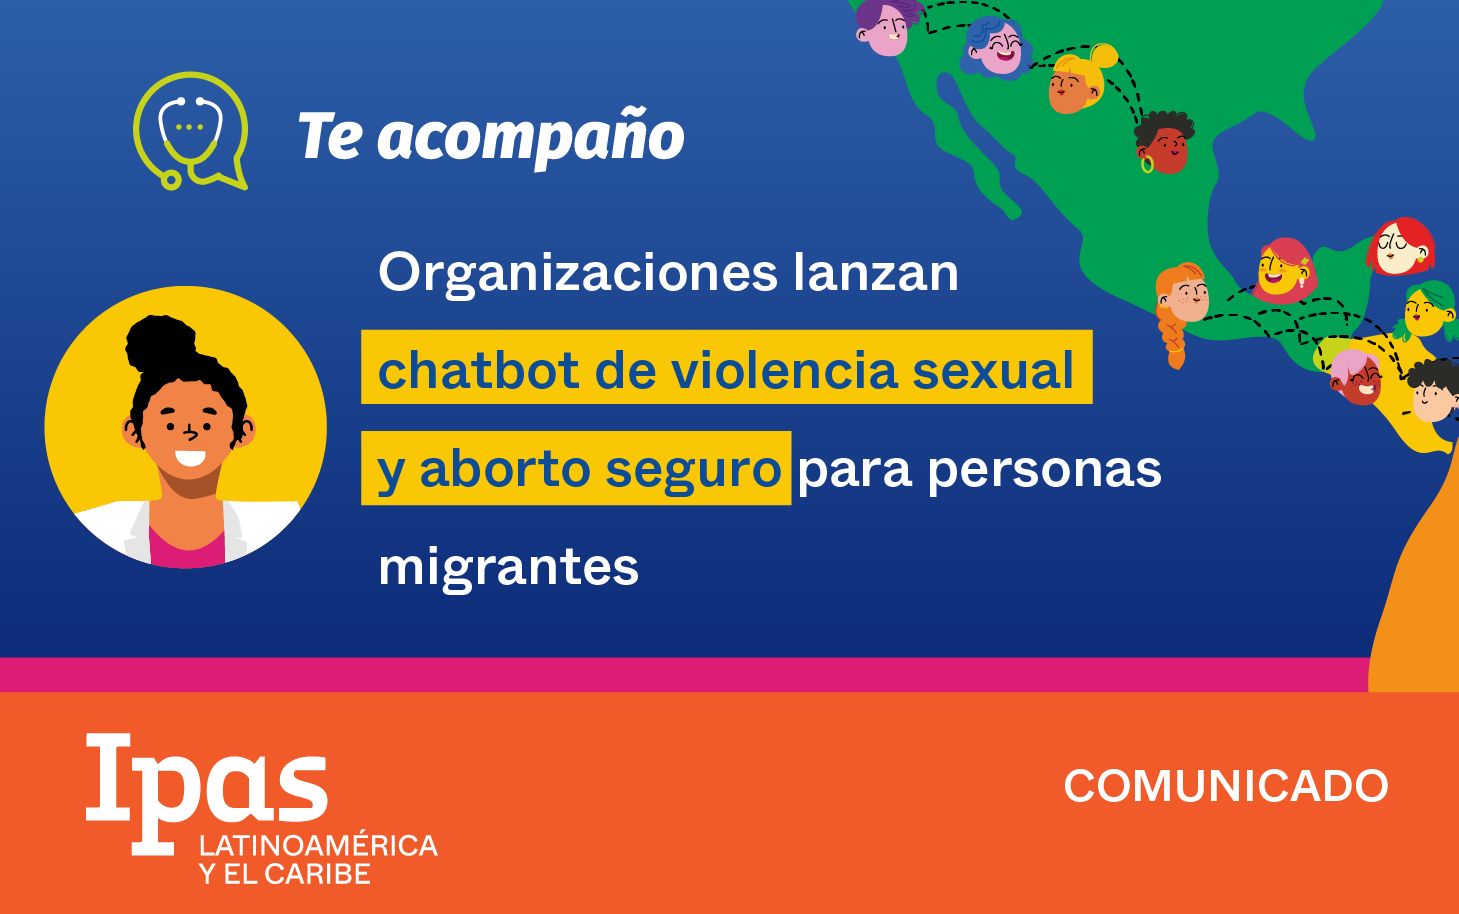 Organizaciones lanzan Chabot de violencia sexual y aborto seguro para personas migrantes